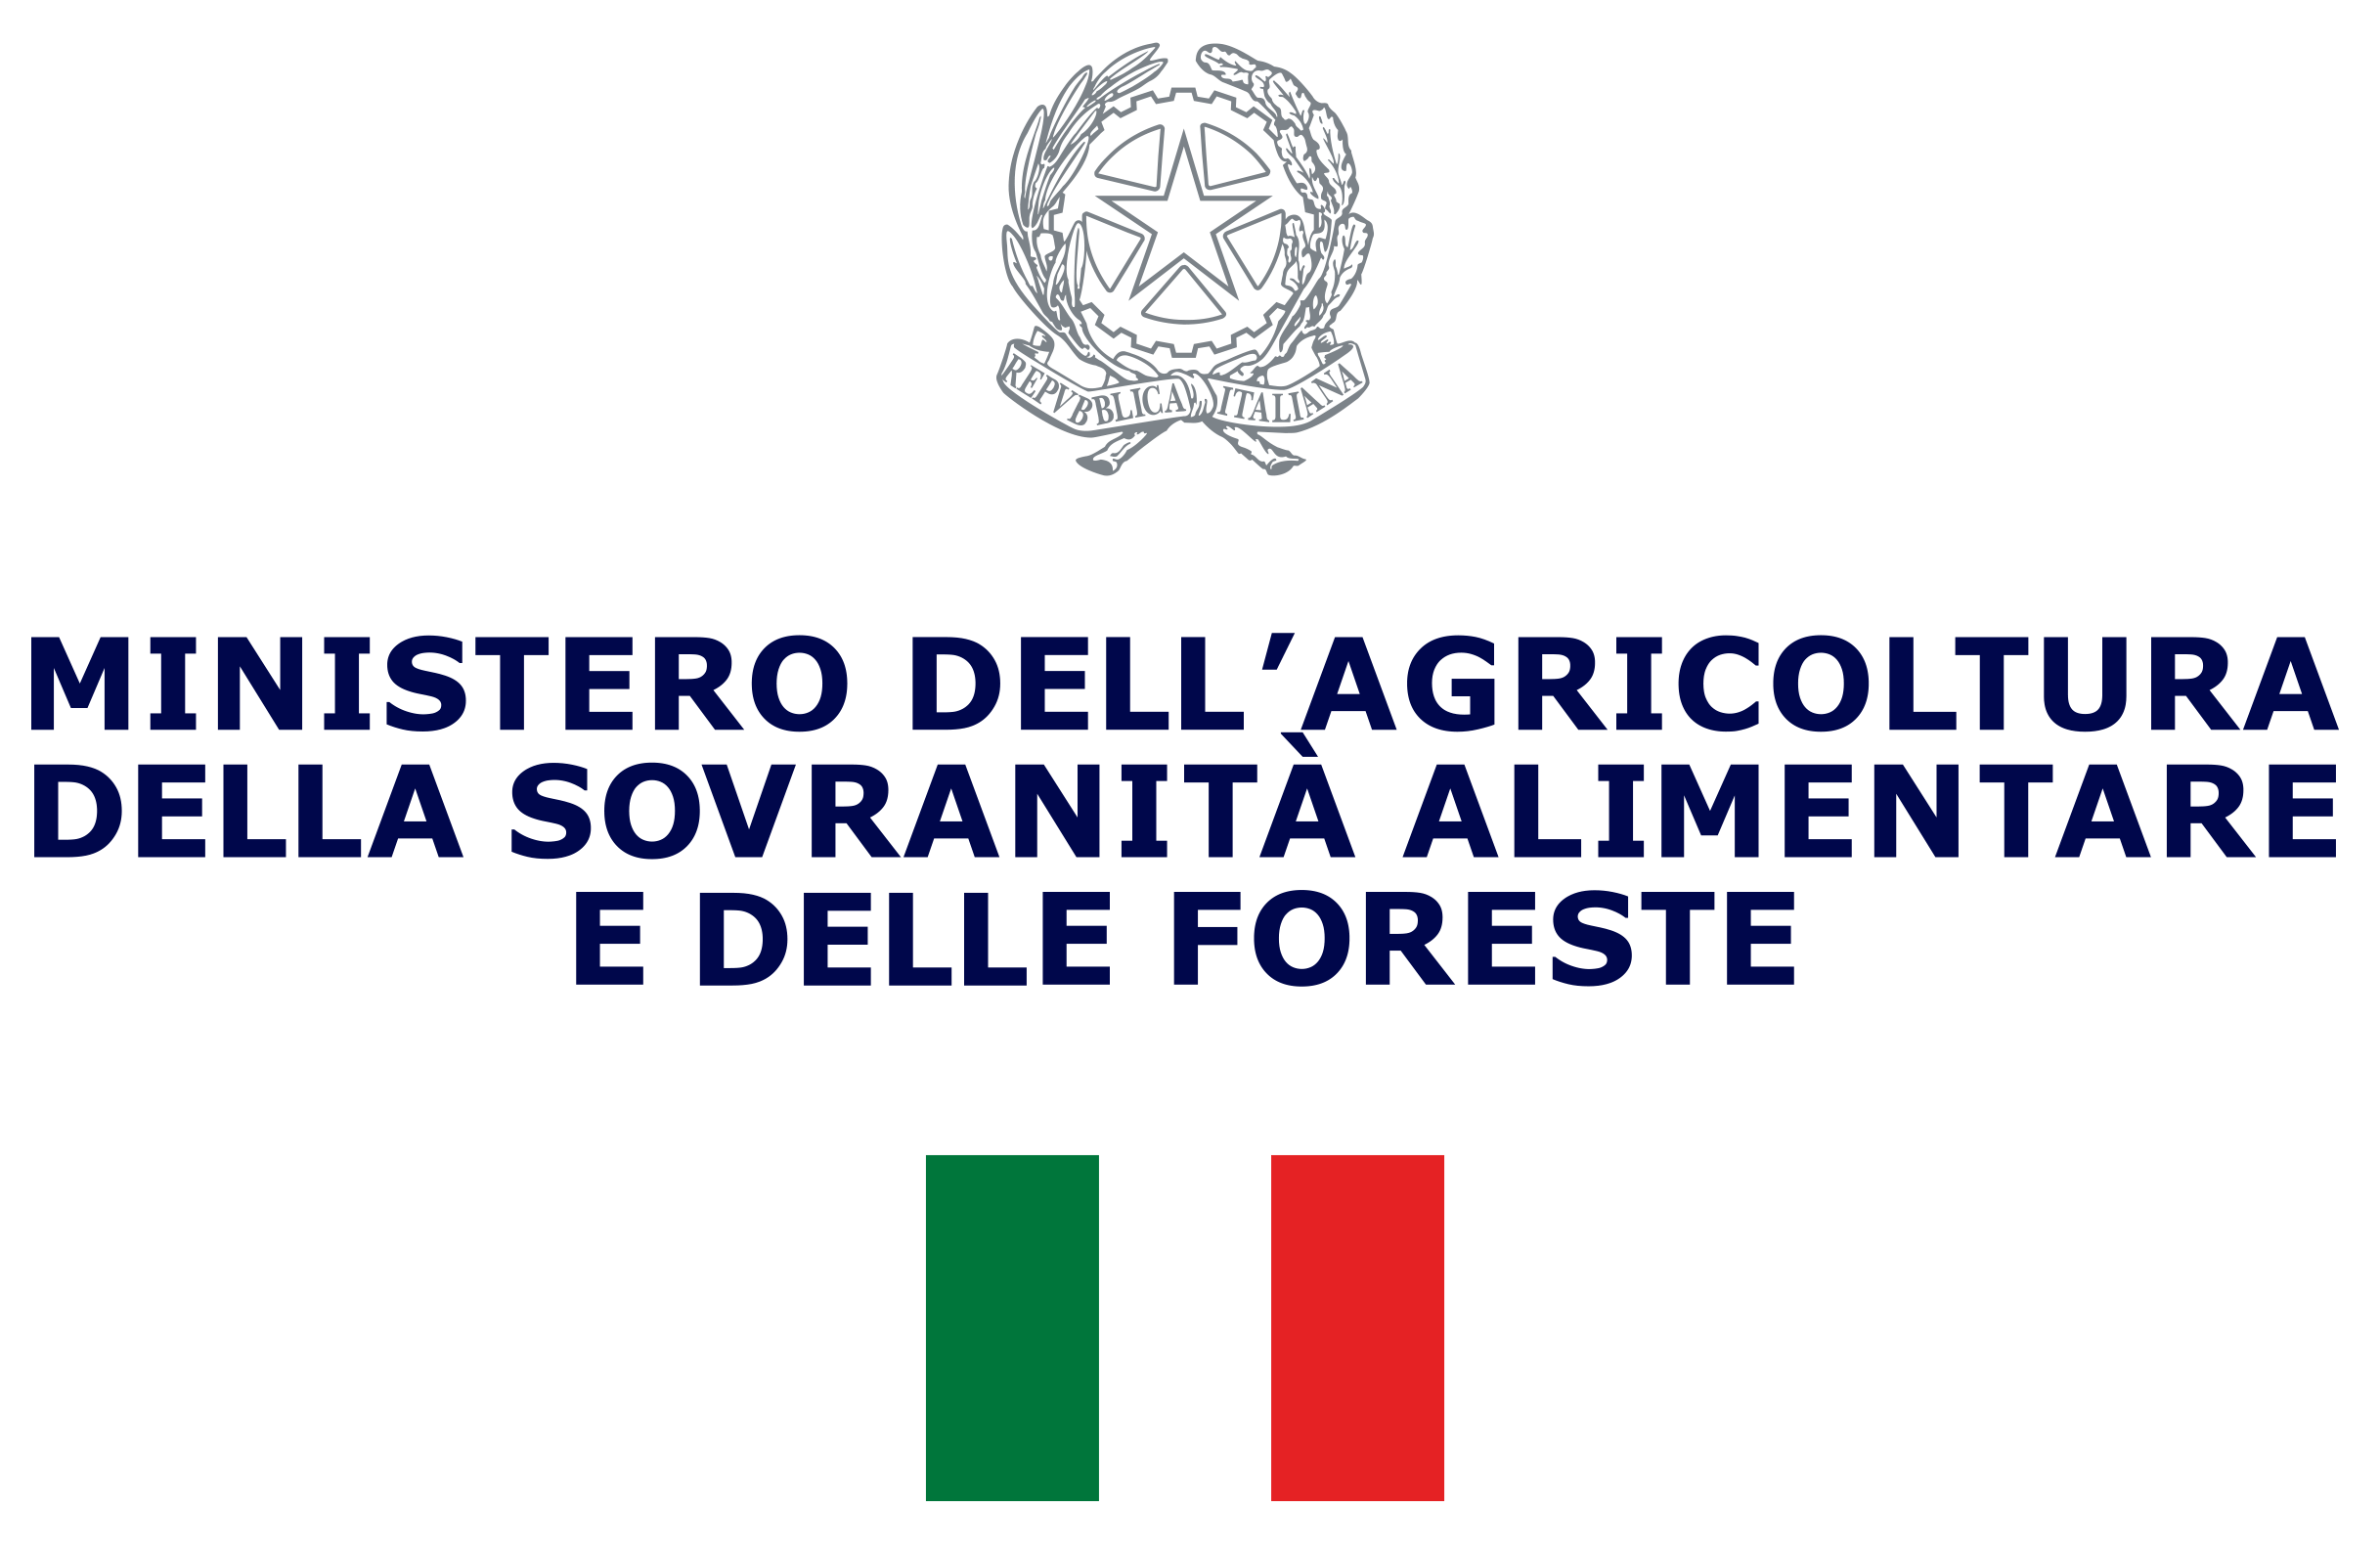 Ministero dell’agricoltura,
della sovranità alimentare e delle foreste